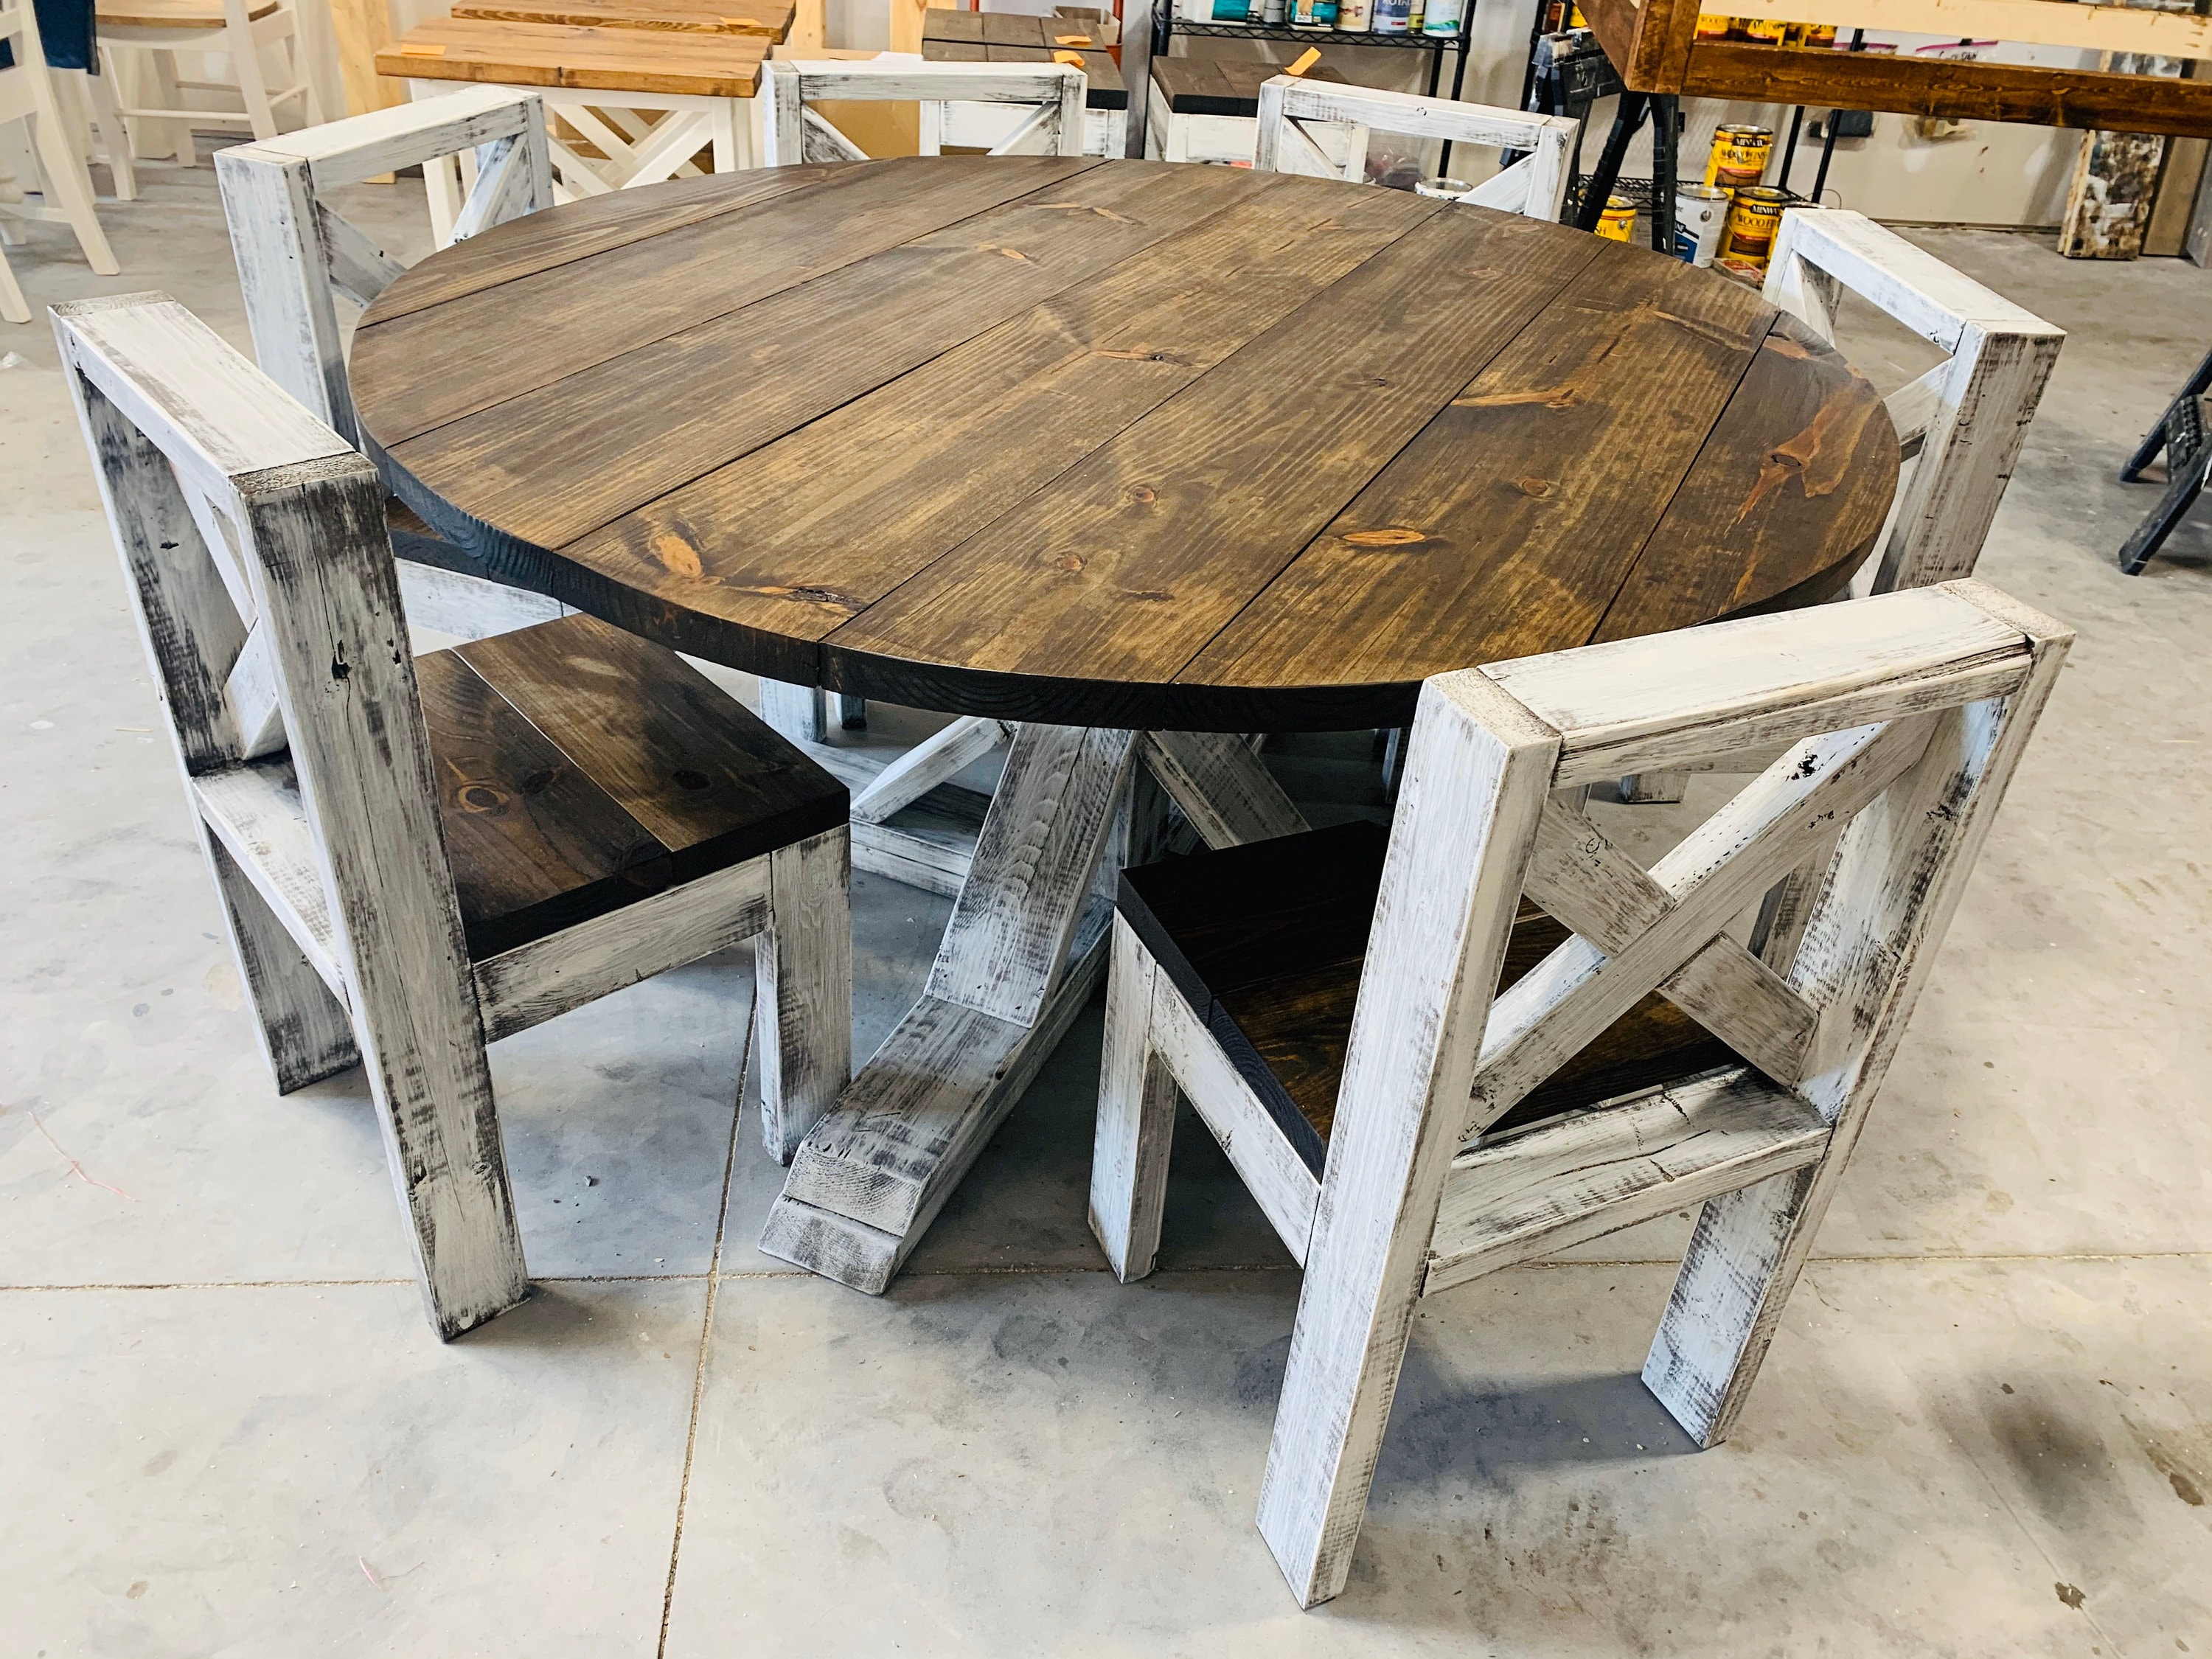 Creatice Farm Decor Kitchen Table for Small Space